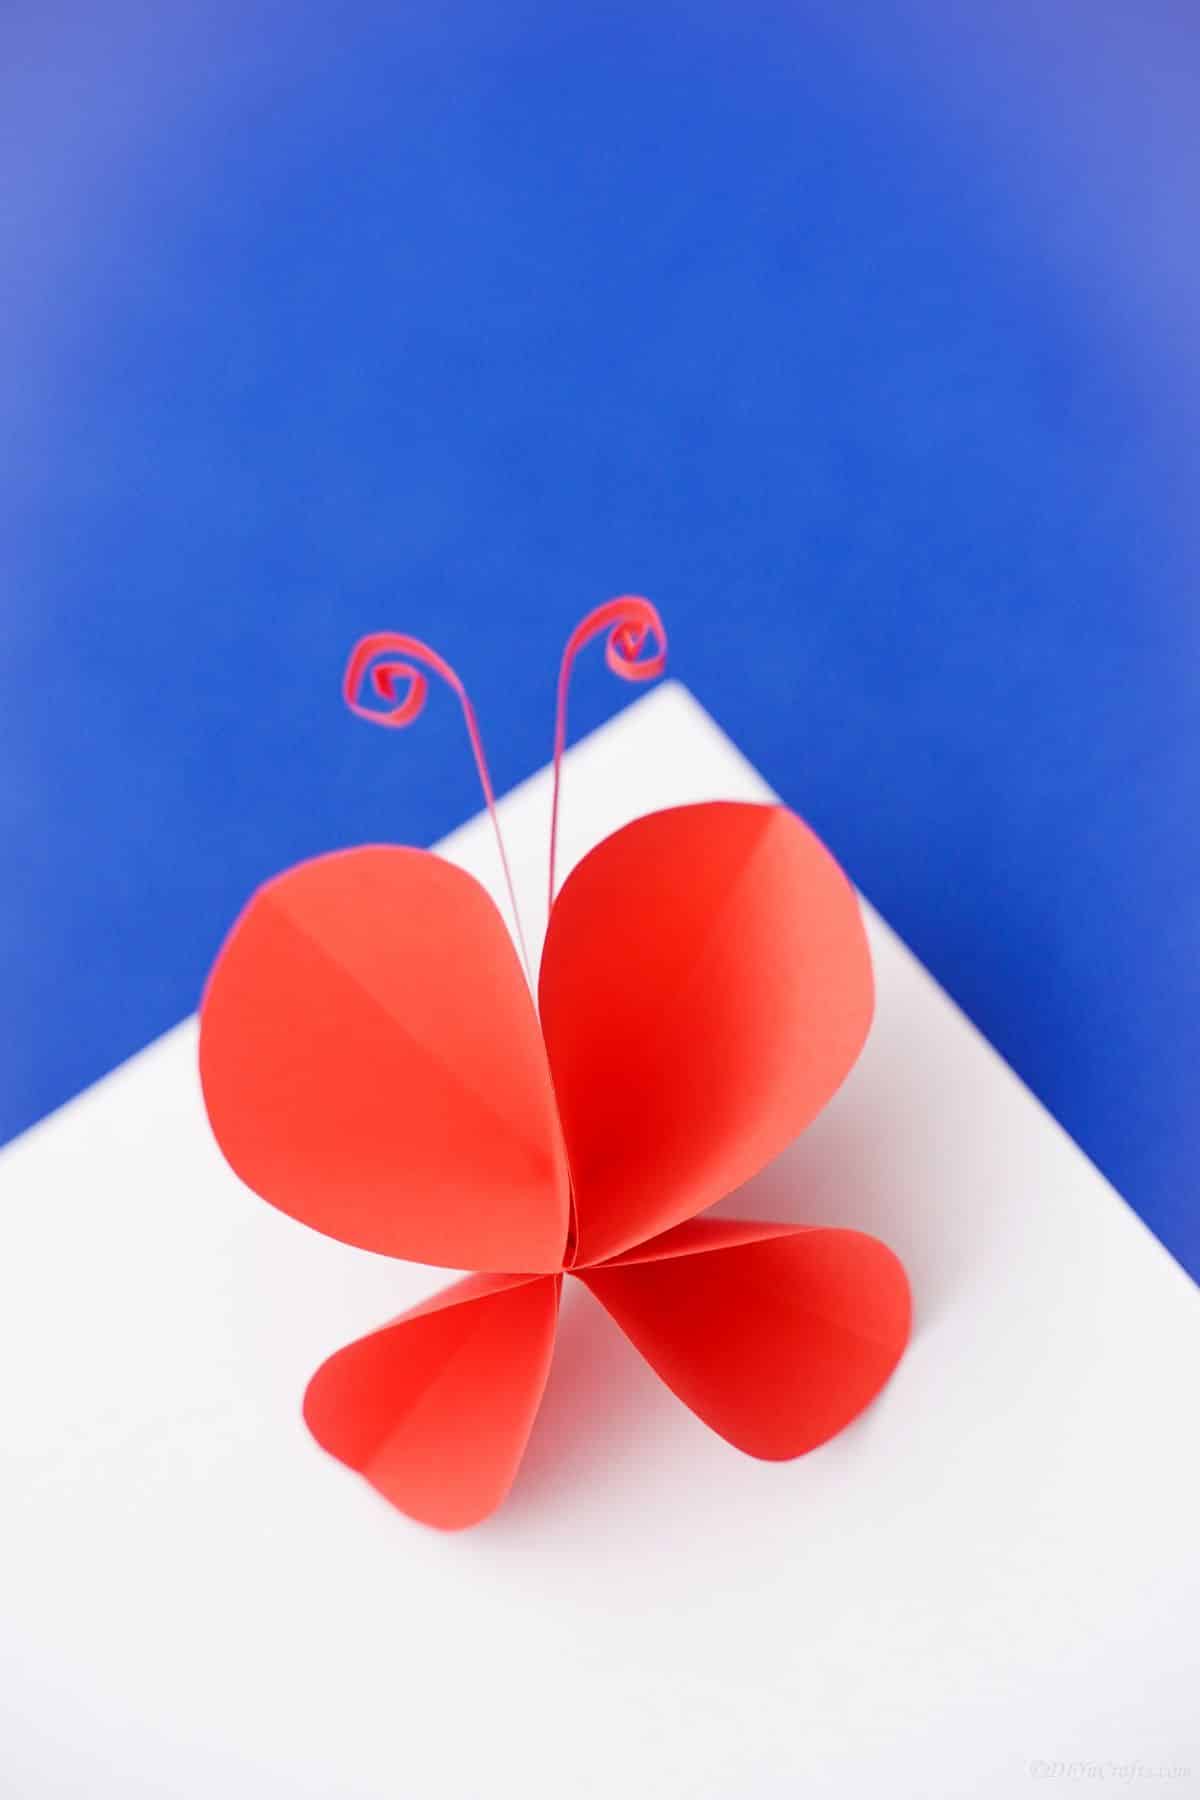 бумажная бабочка, лежащая на белой и синей бумаге